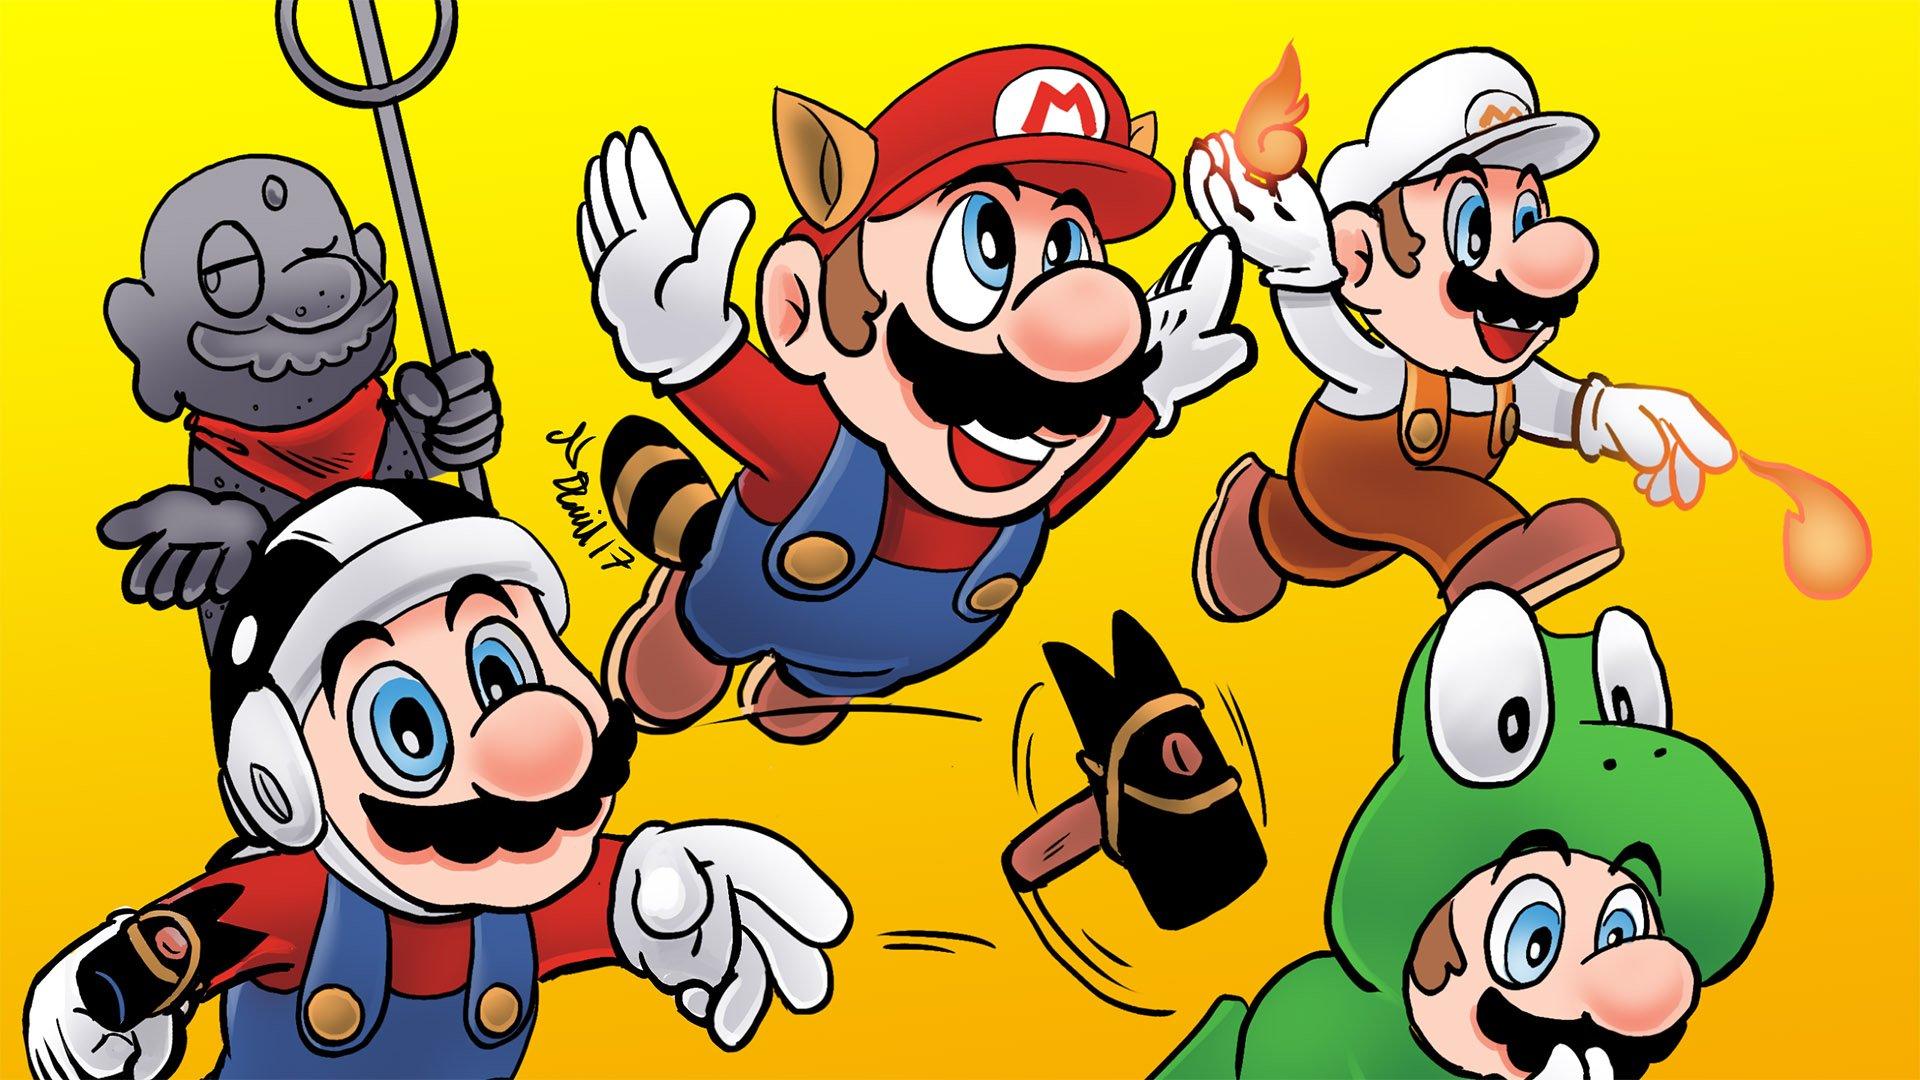 Super Mario Bros. 3 Wallpapers